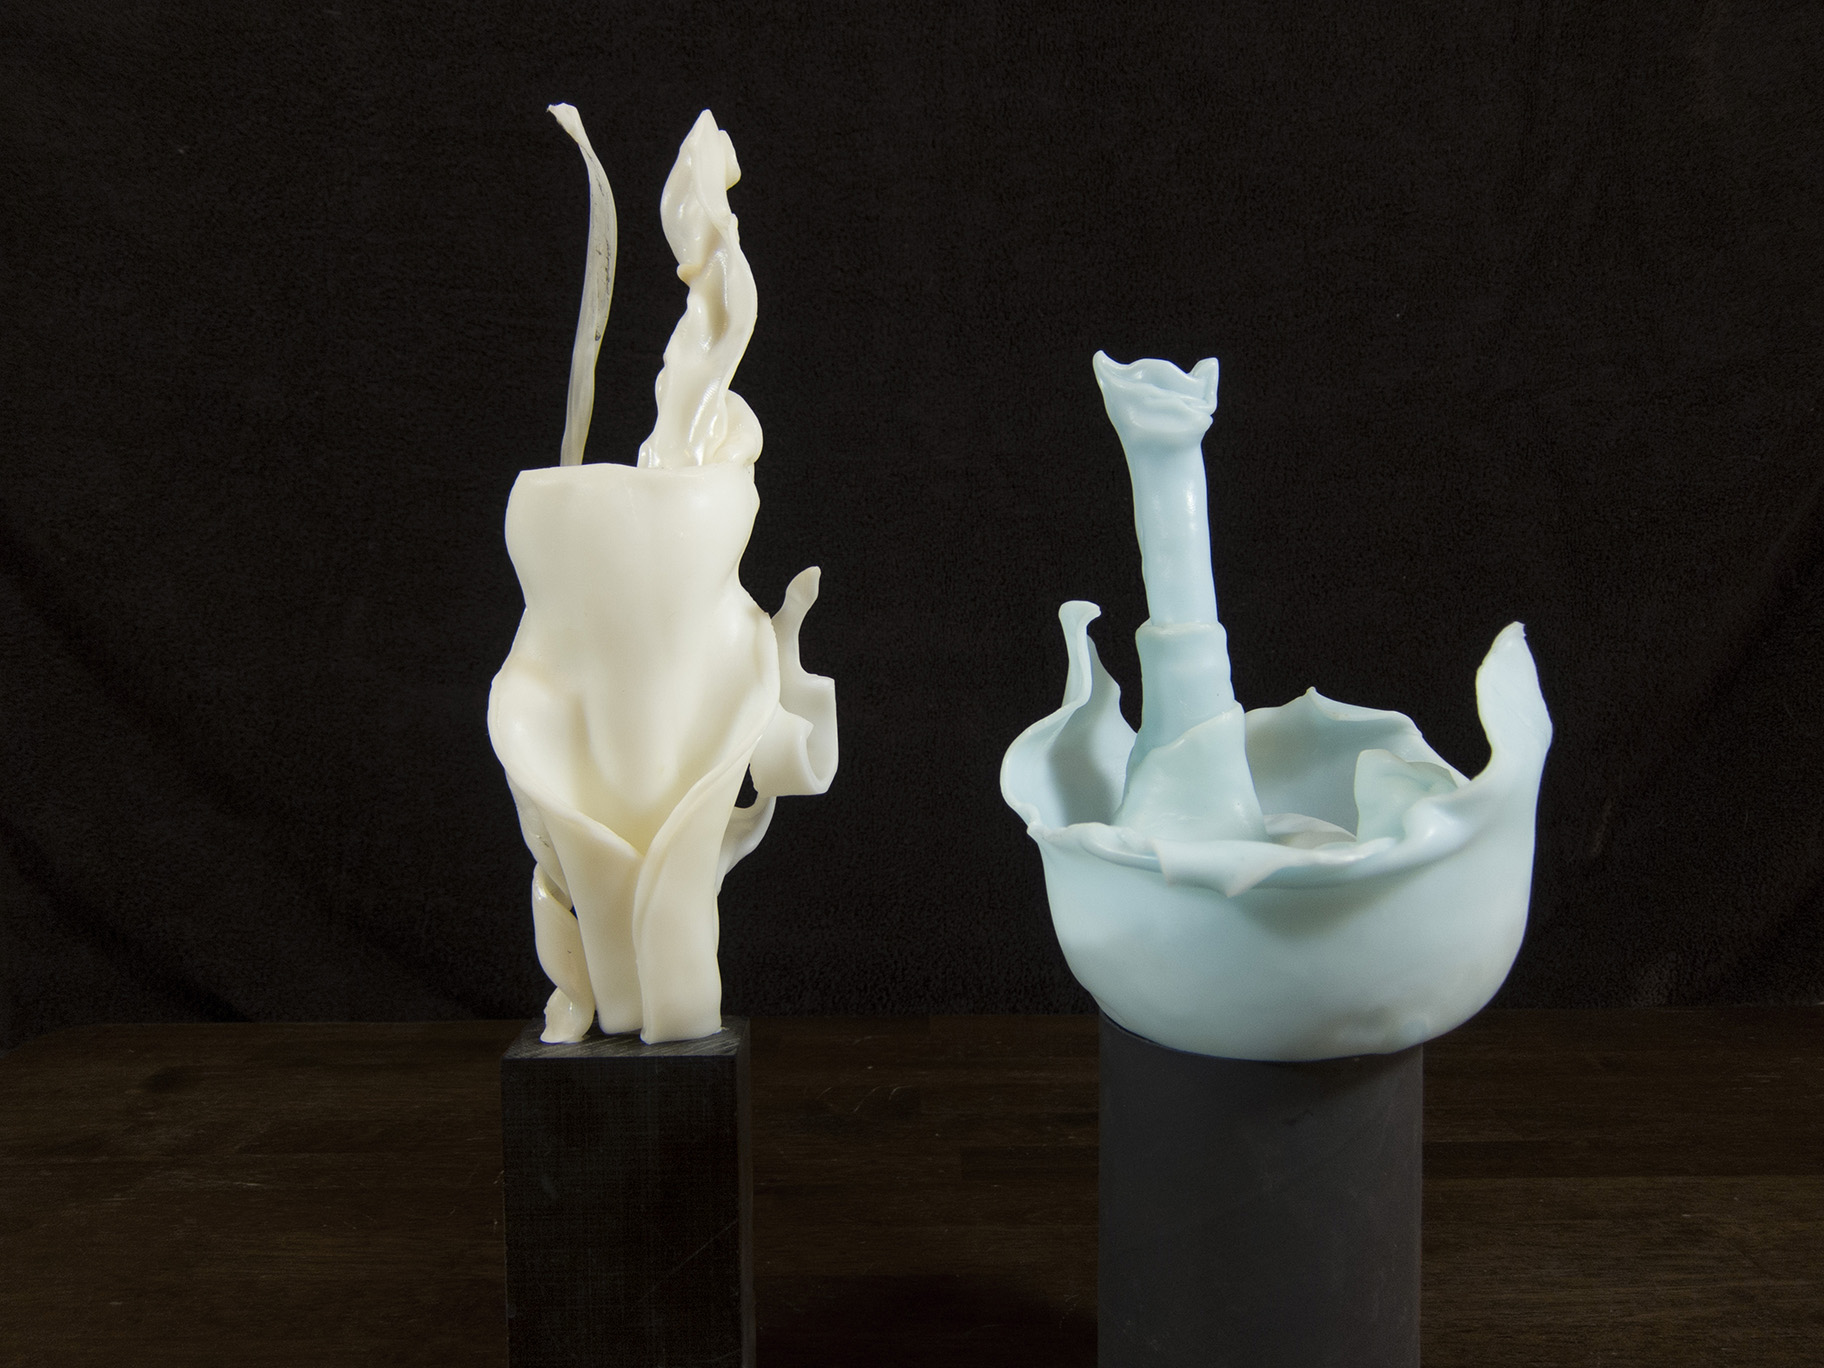 aquaplast-sculptures